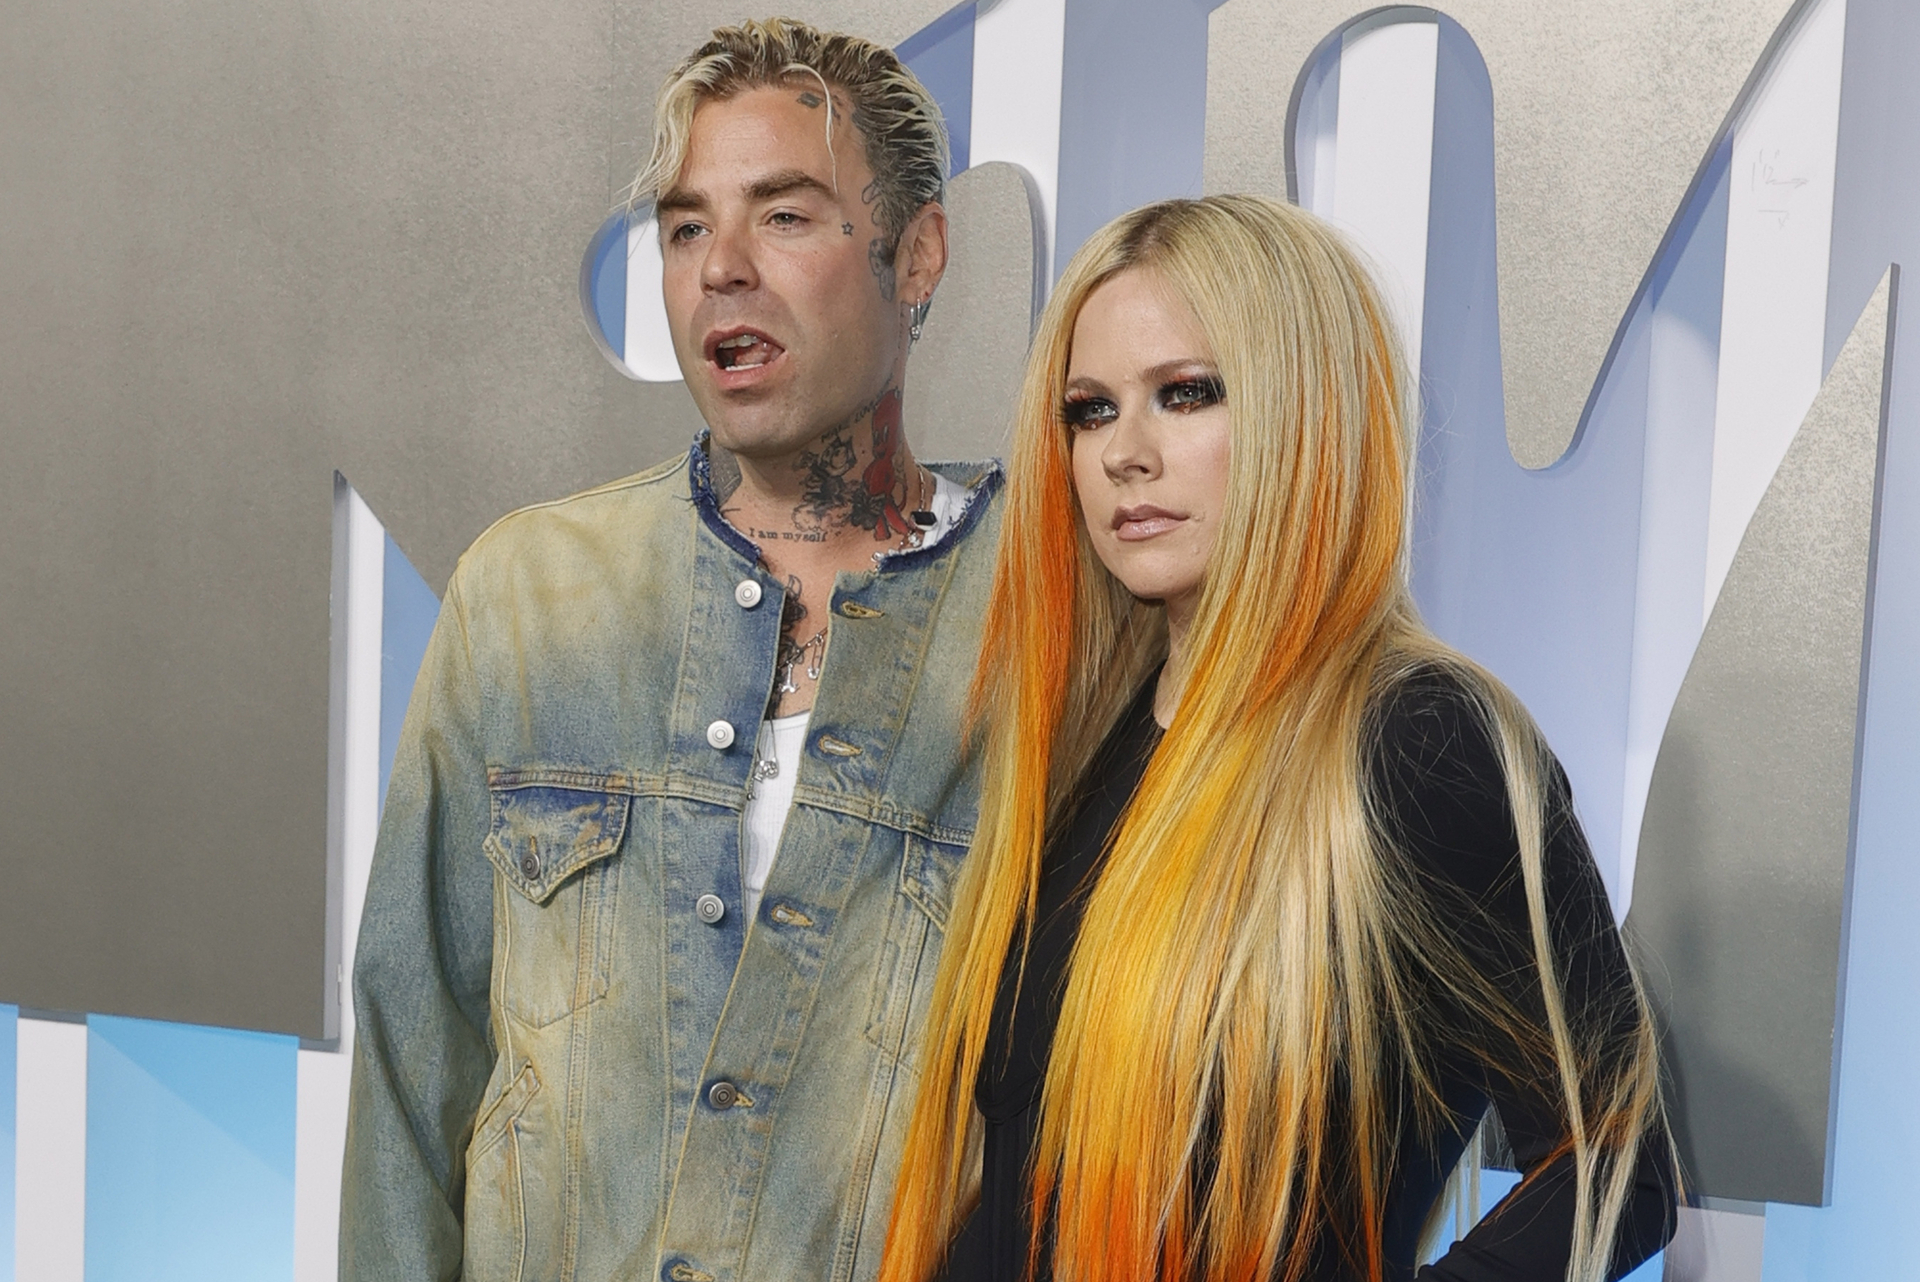 Mod Sun se enteró de su ruptura con Avril Lavigne por la prensa, aseguran medios